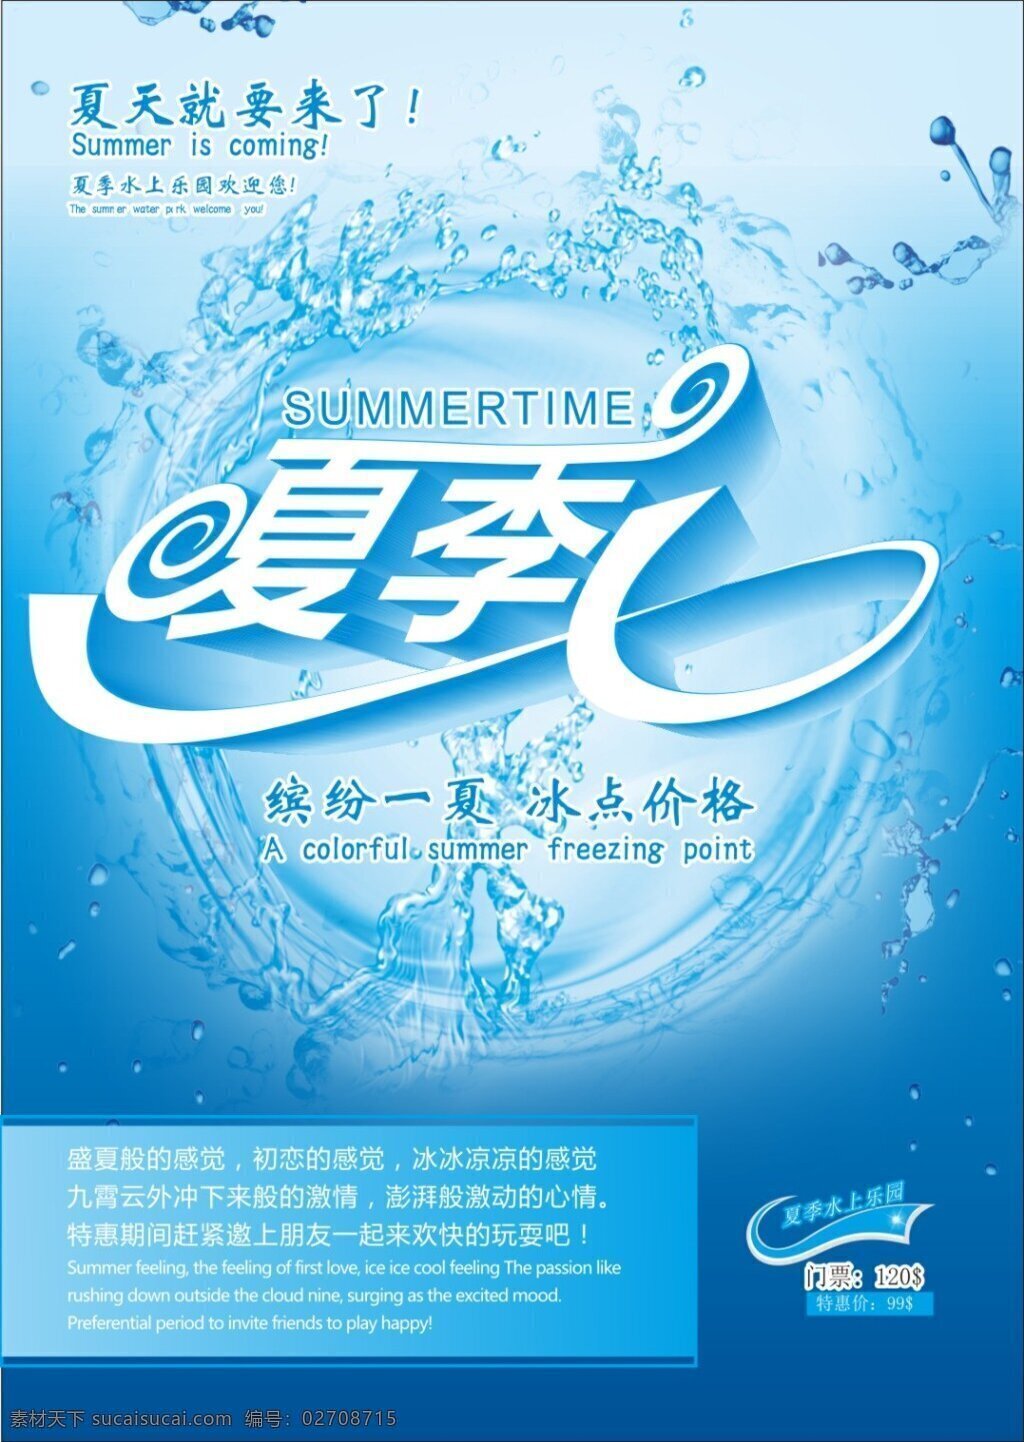 夏季 水上乐园 缤纷一夏 冰点价格 夏季水上乐园 夏天就要来了